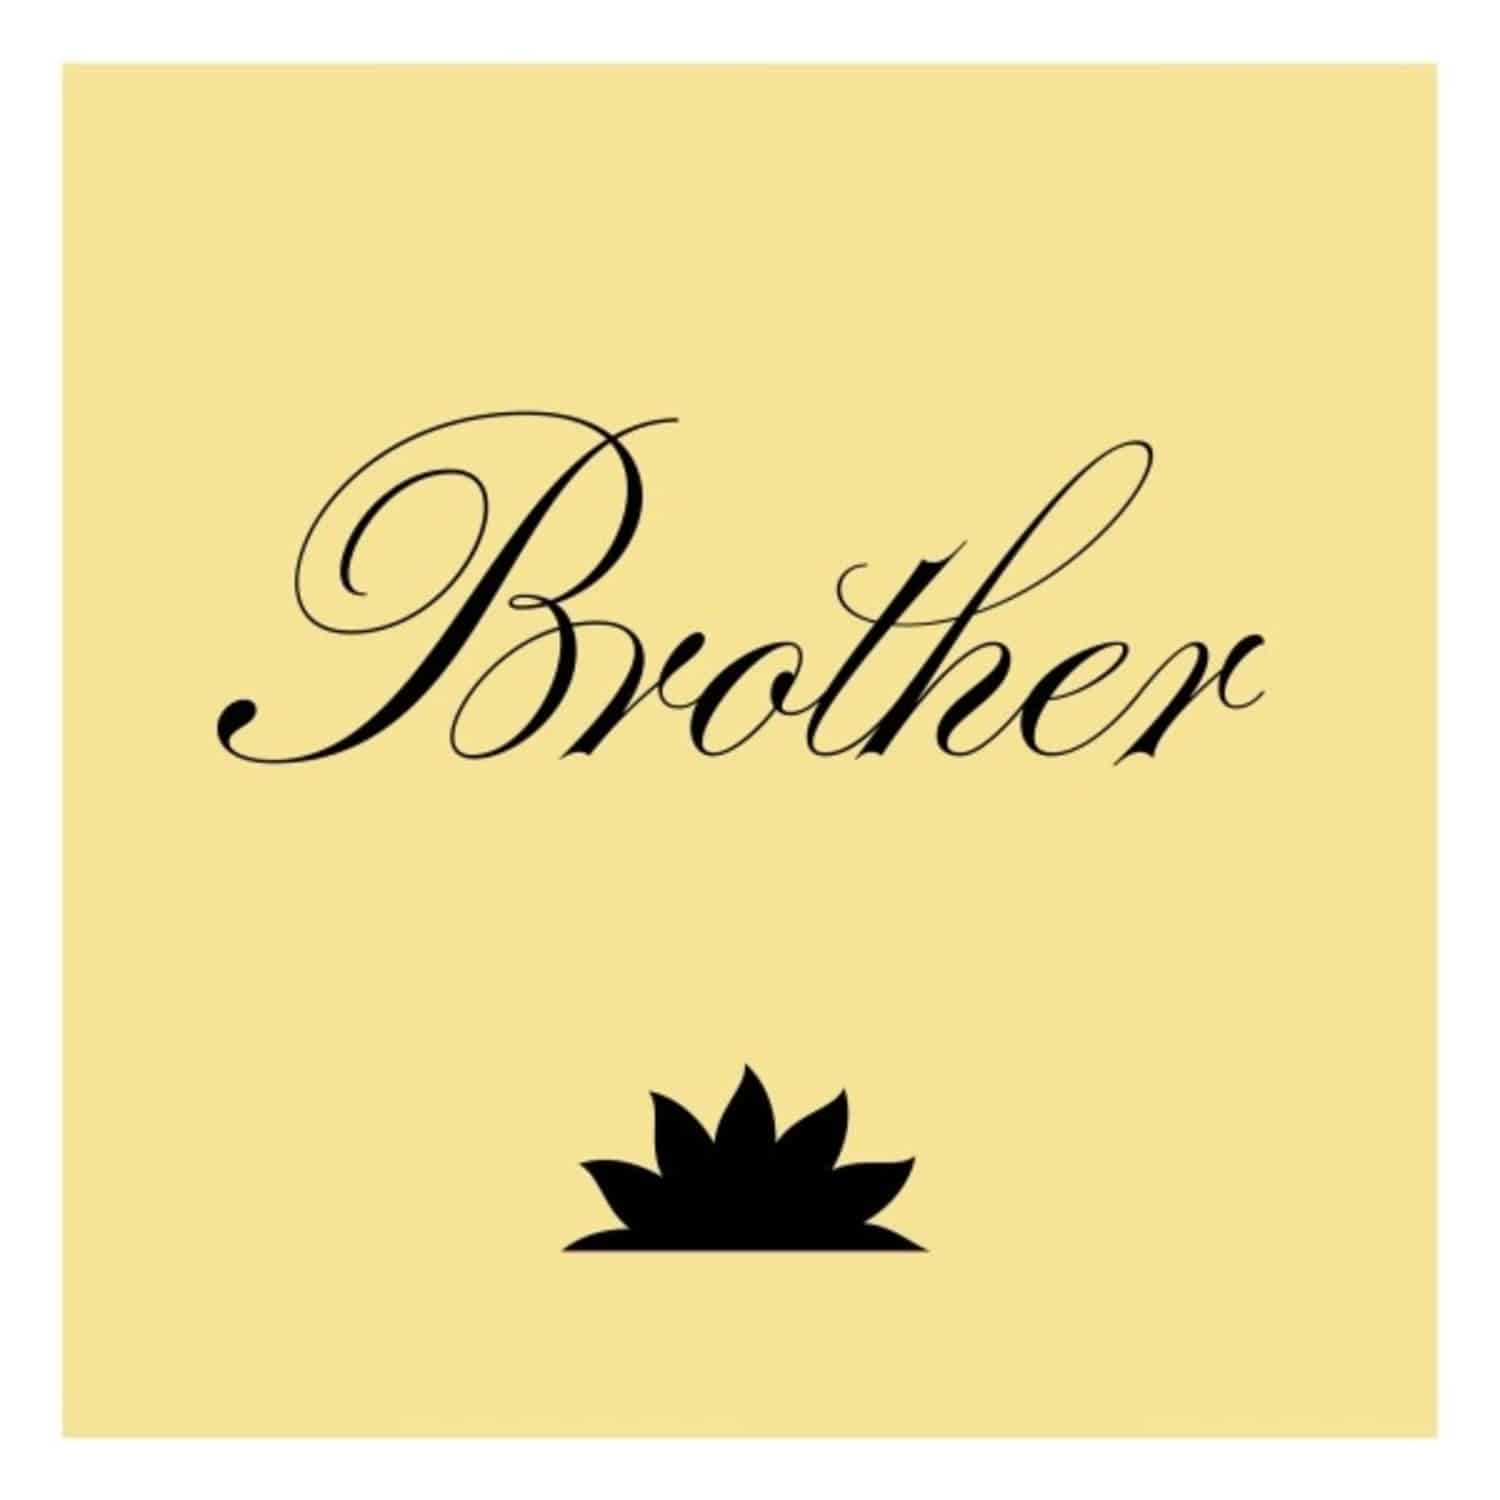 BRTHR - BROTHER 